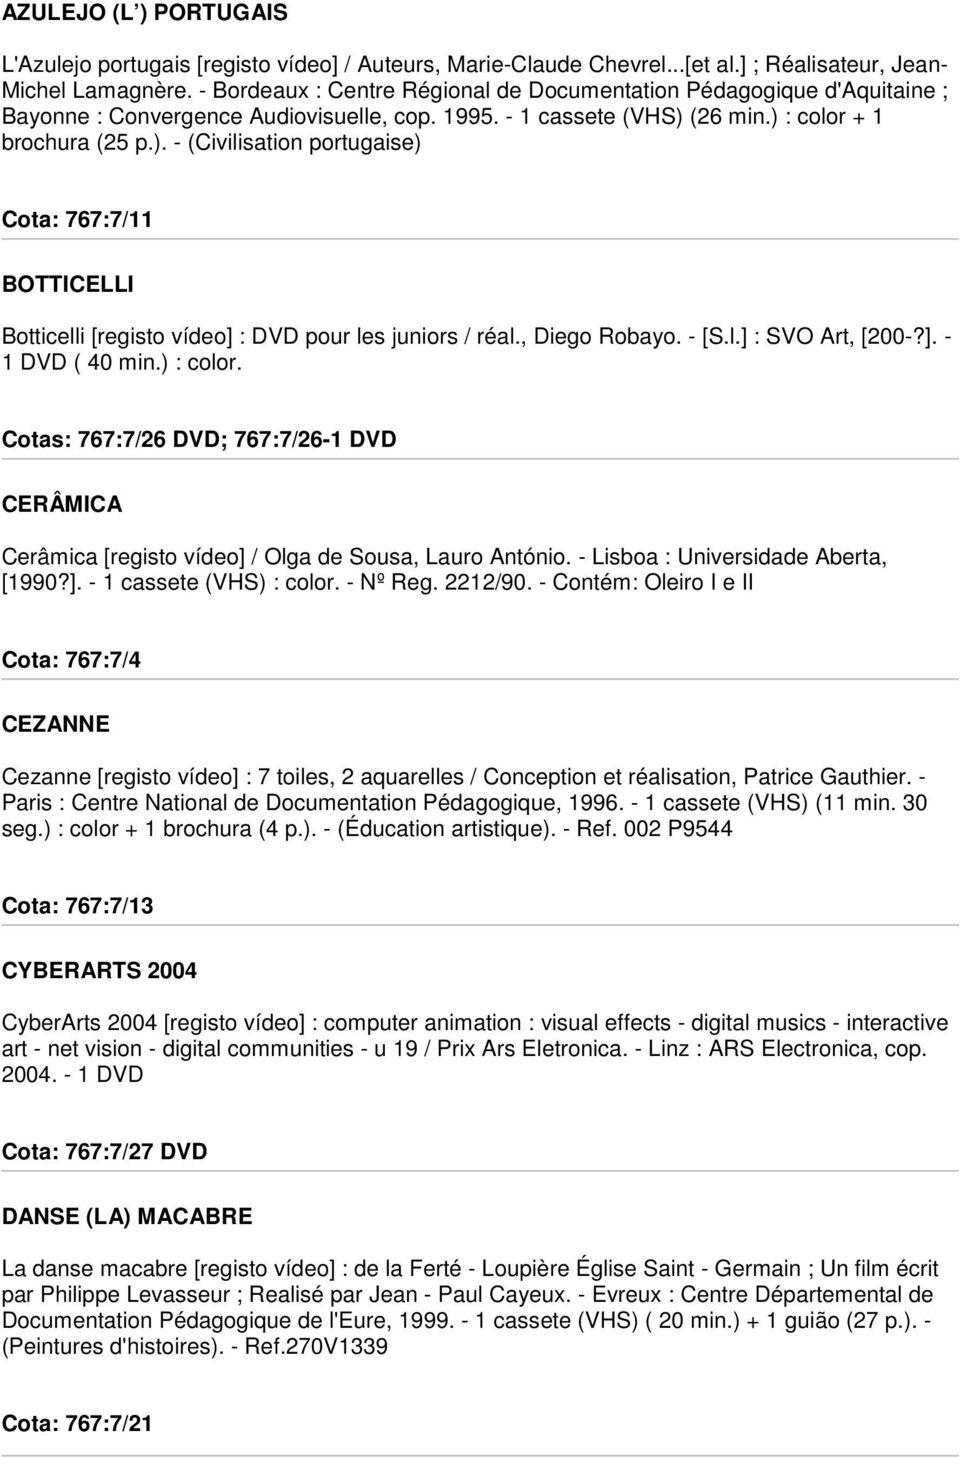 (26 min.) : color + 1 brochura (25 p.). - (Civilisation portugaise) Cota: 767:7/11 BOTTICELLI Botticelli [registo vídeo] : DVD pour les juniors / réal., Diego Robayo. - [S.l.] : SVO Art, [200-?]. - 1 DVD ( 40 min.